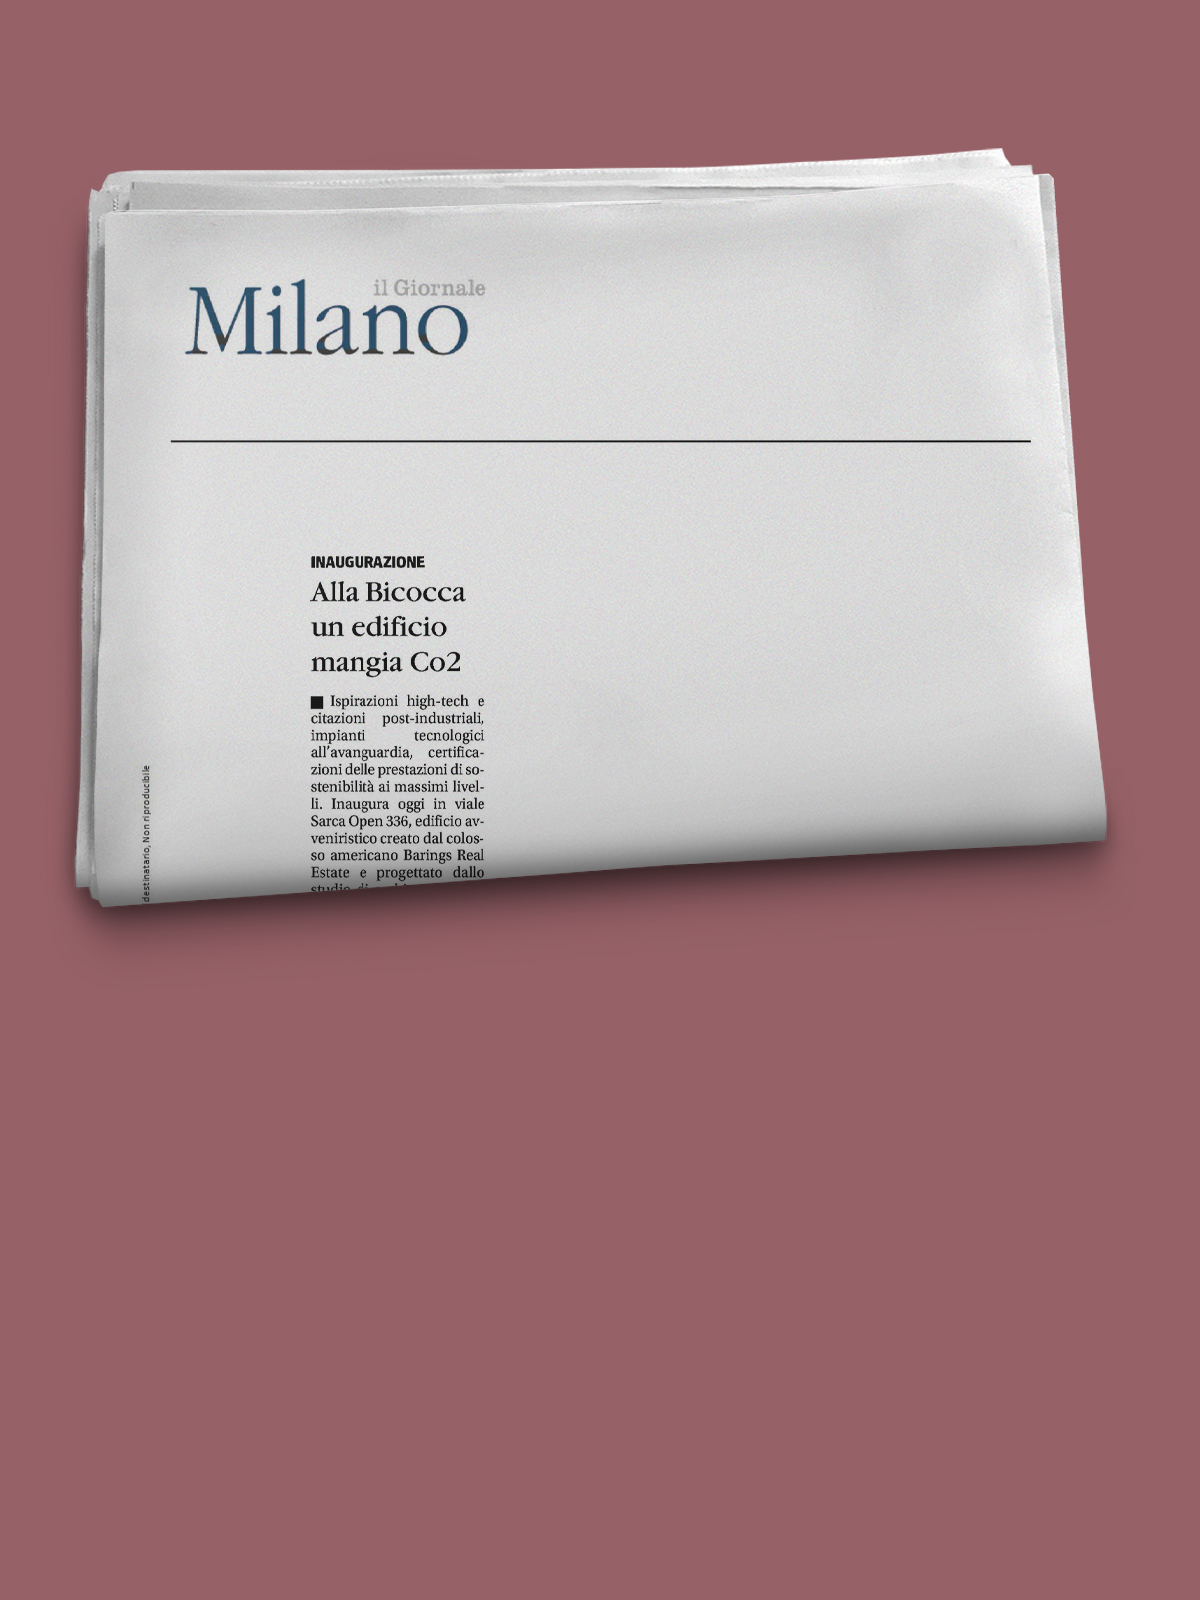 Il Giornale
<em>Milano</em>